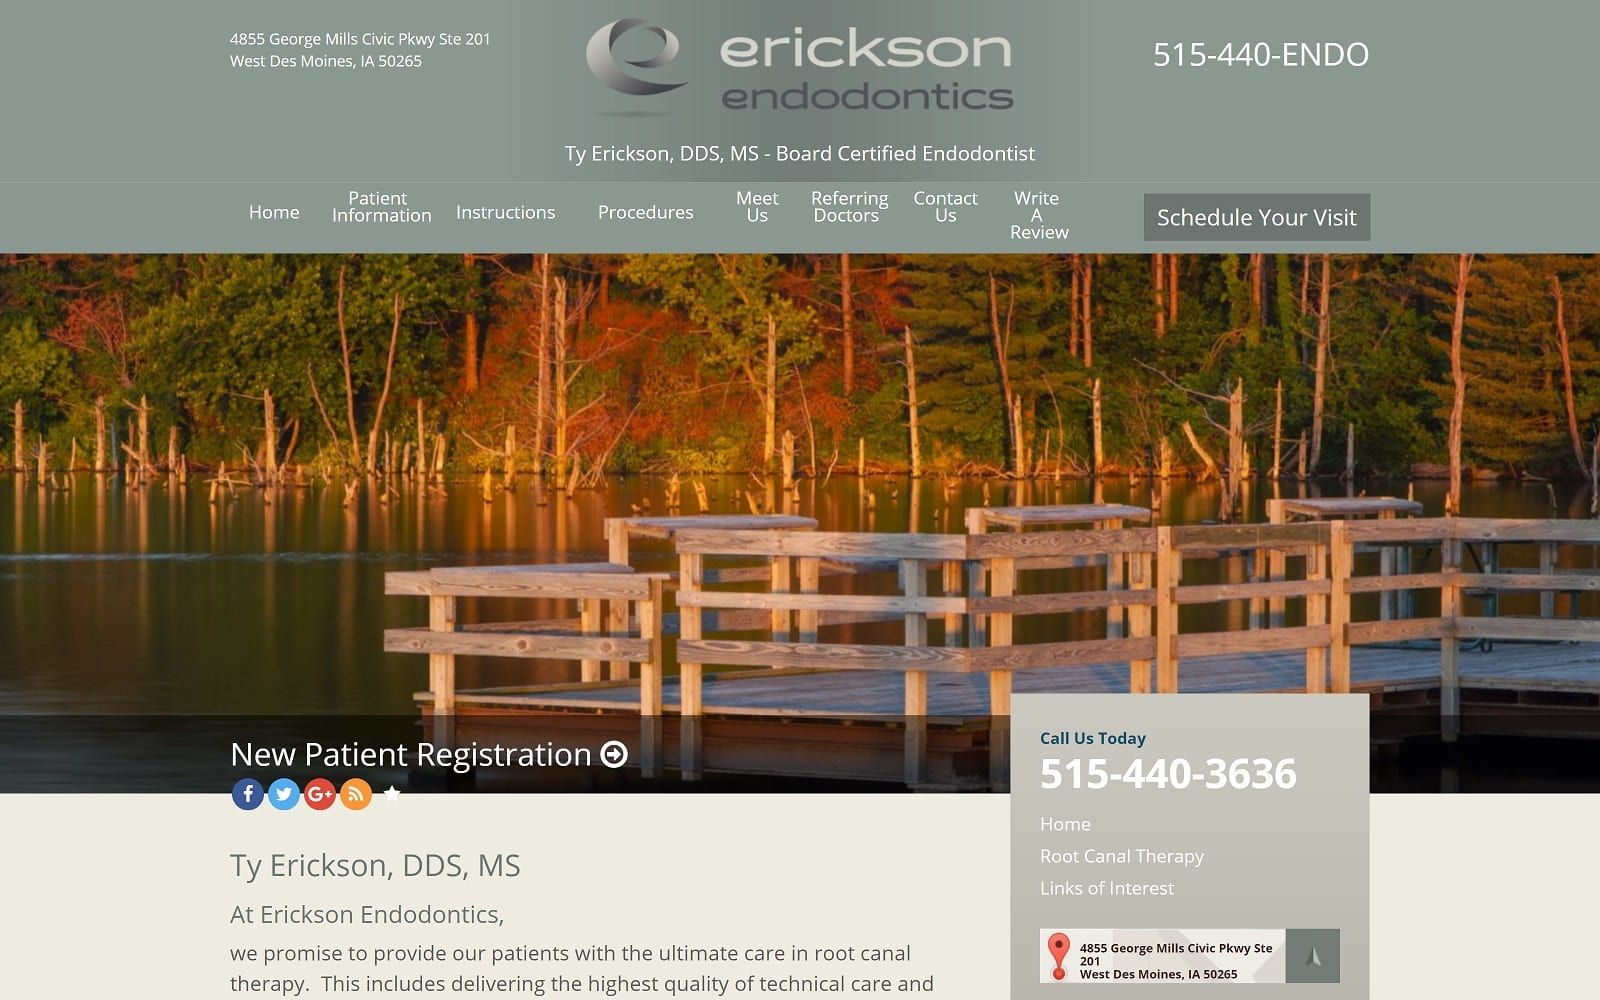 The screenshot of erickson endodontics ericksonendo. Com dr. Ty erickson website